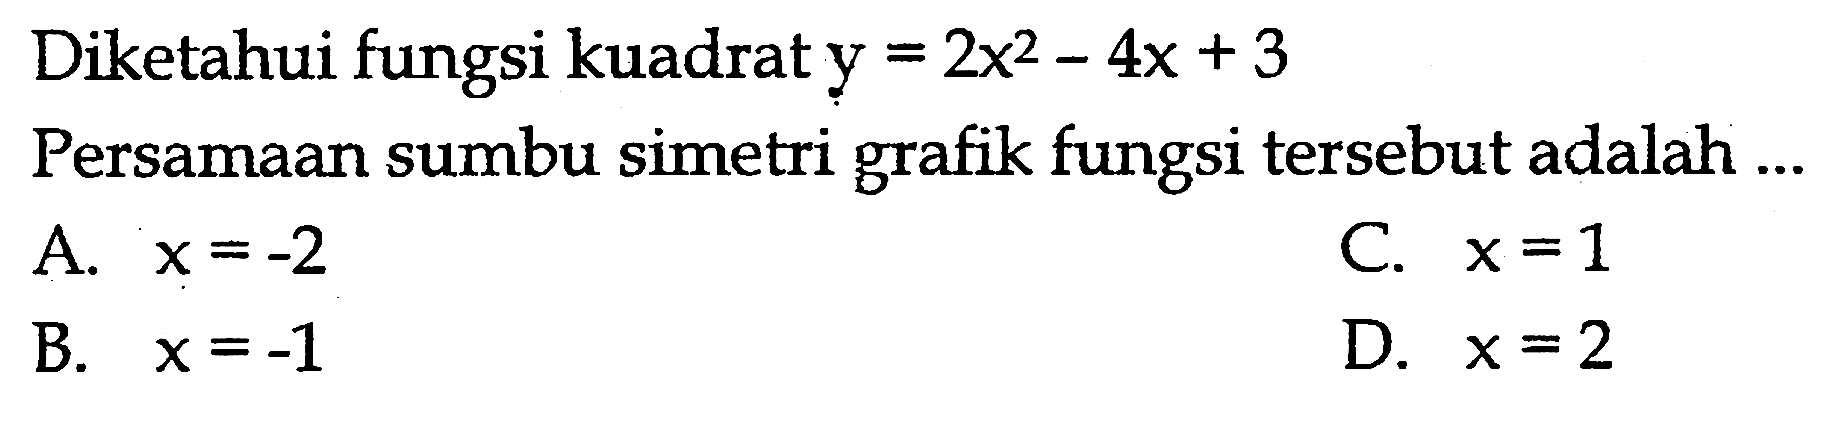 Diketahui fungsi kuadrat  y=2x^2-4x+3 Persamaan sumbu simetri grafik fungsi tersebut adalah ...